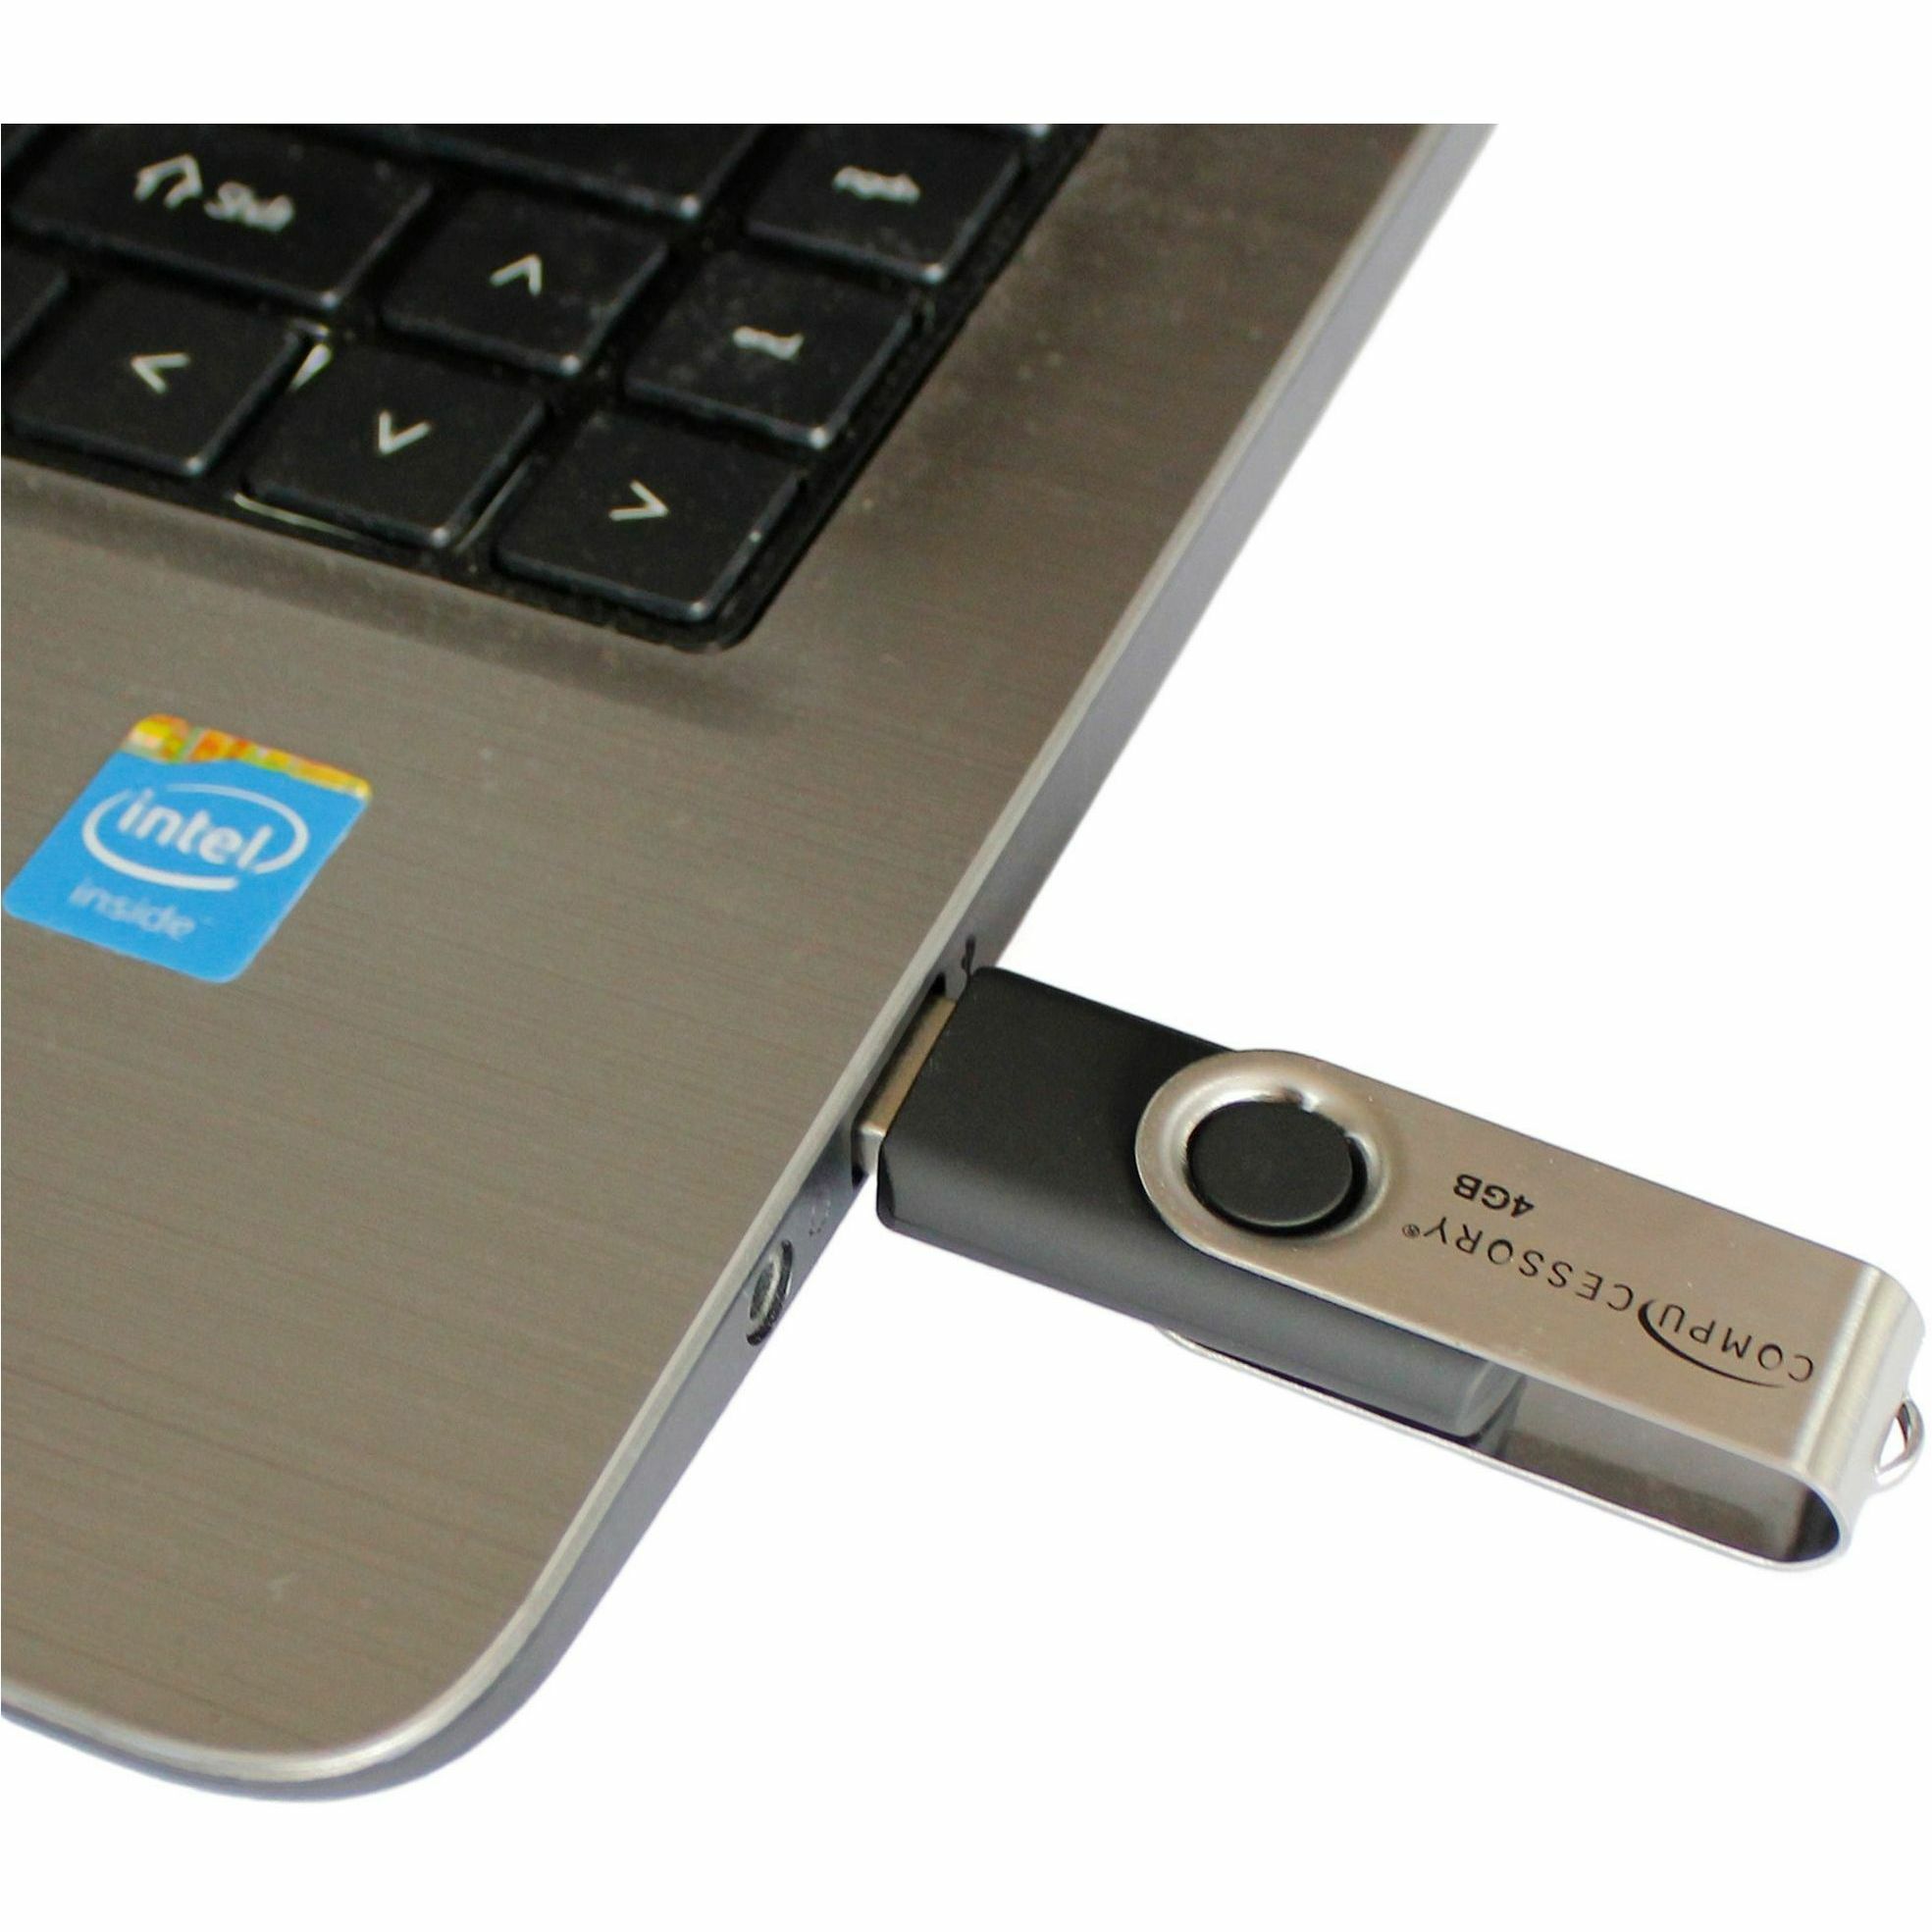 Clé USB multifonction Flashdrive 3 en 1 pour iPhone, iPad, iPod